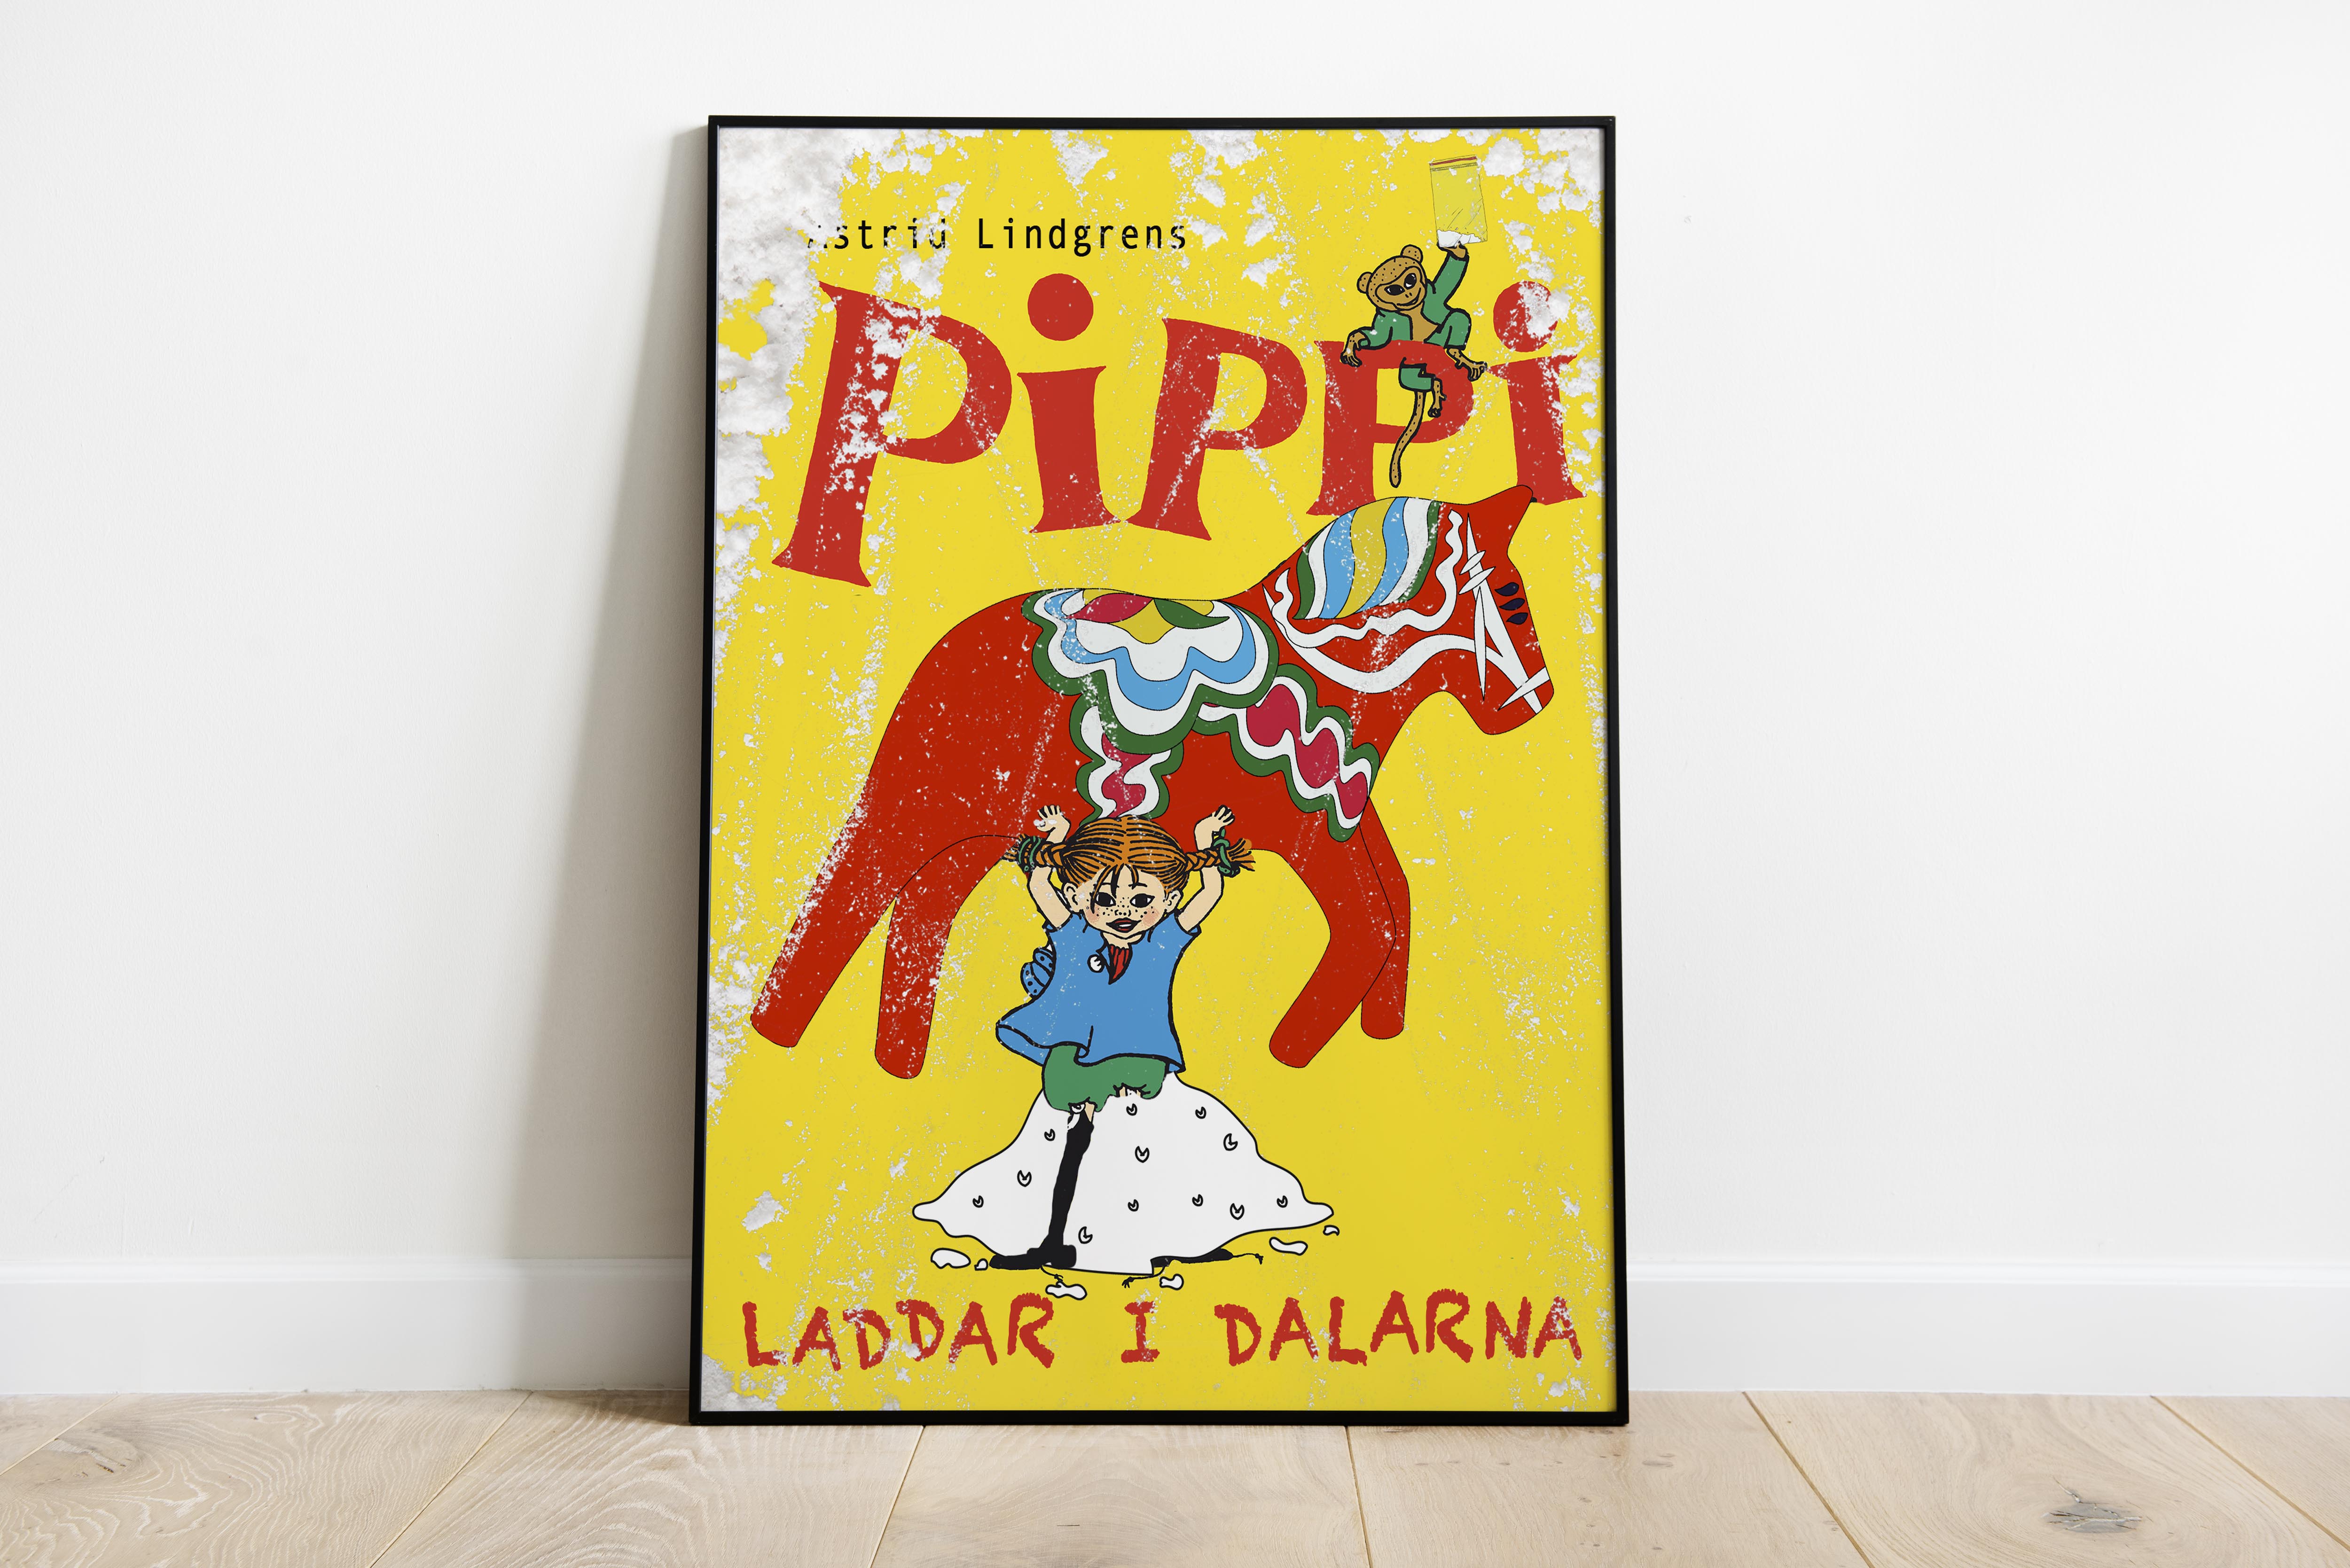 "Pippi Dalarna"